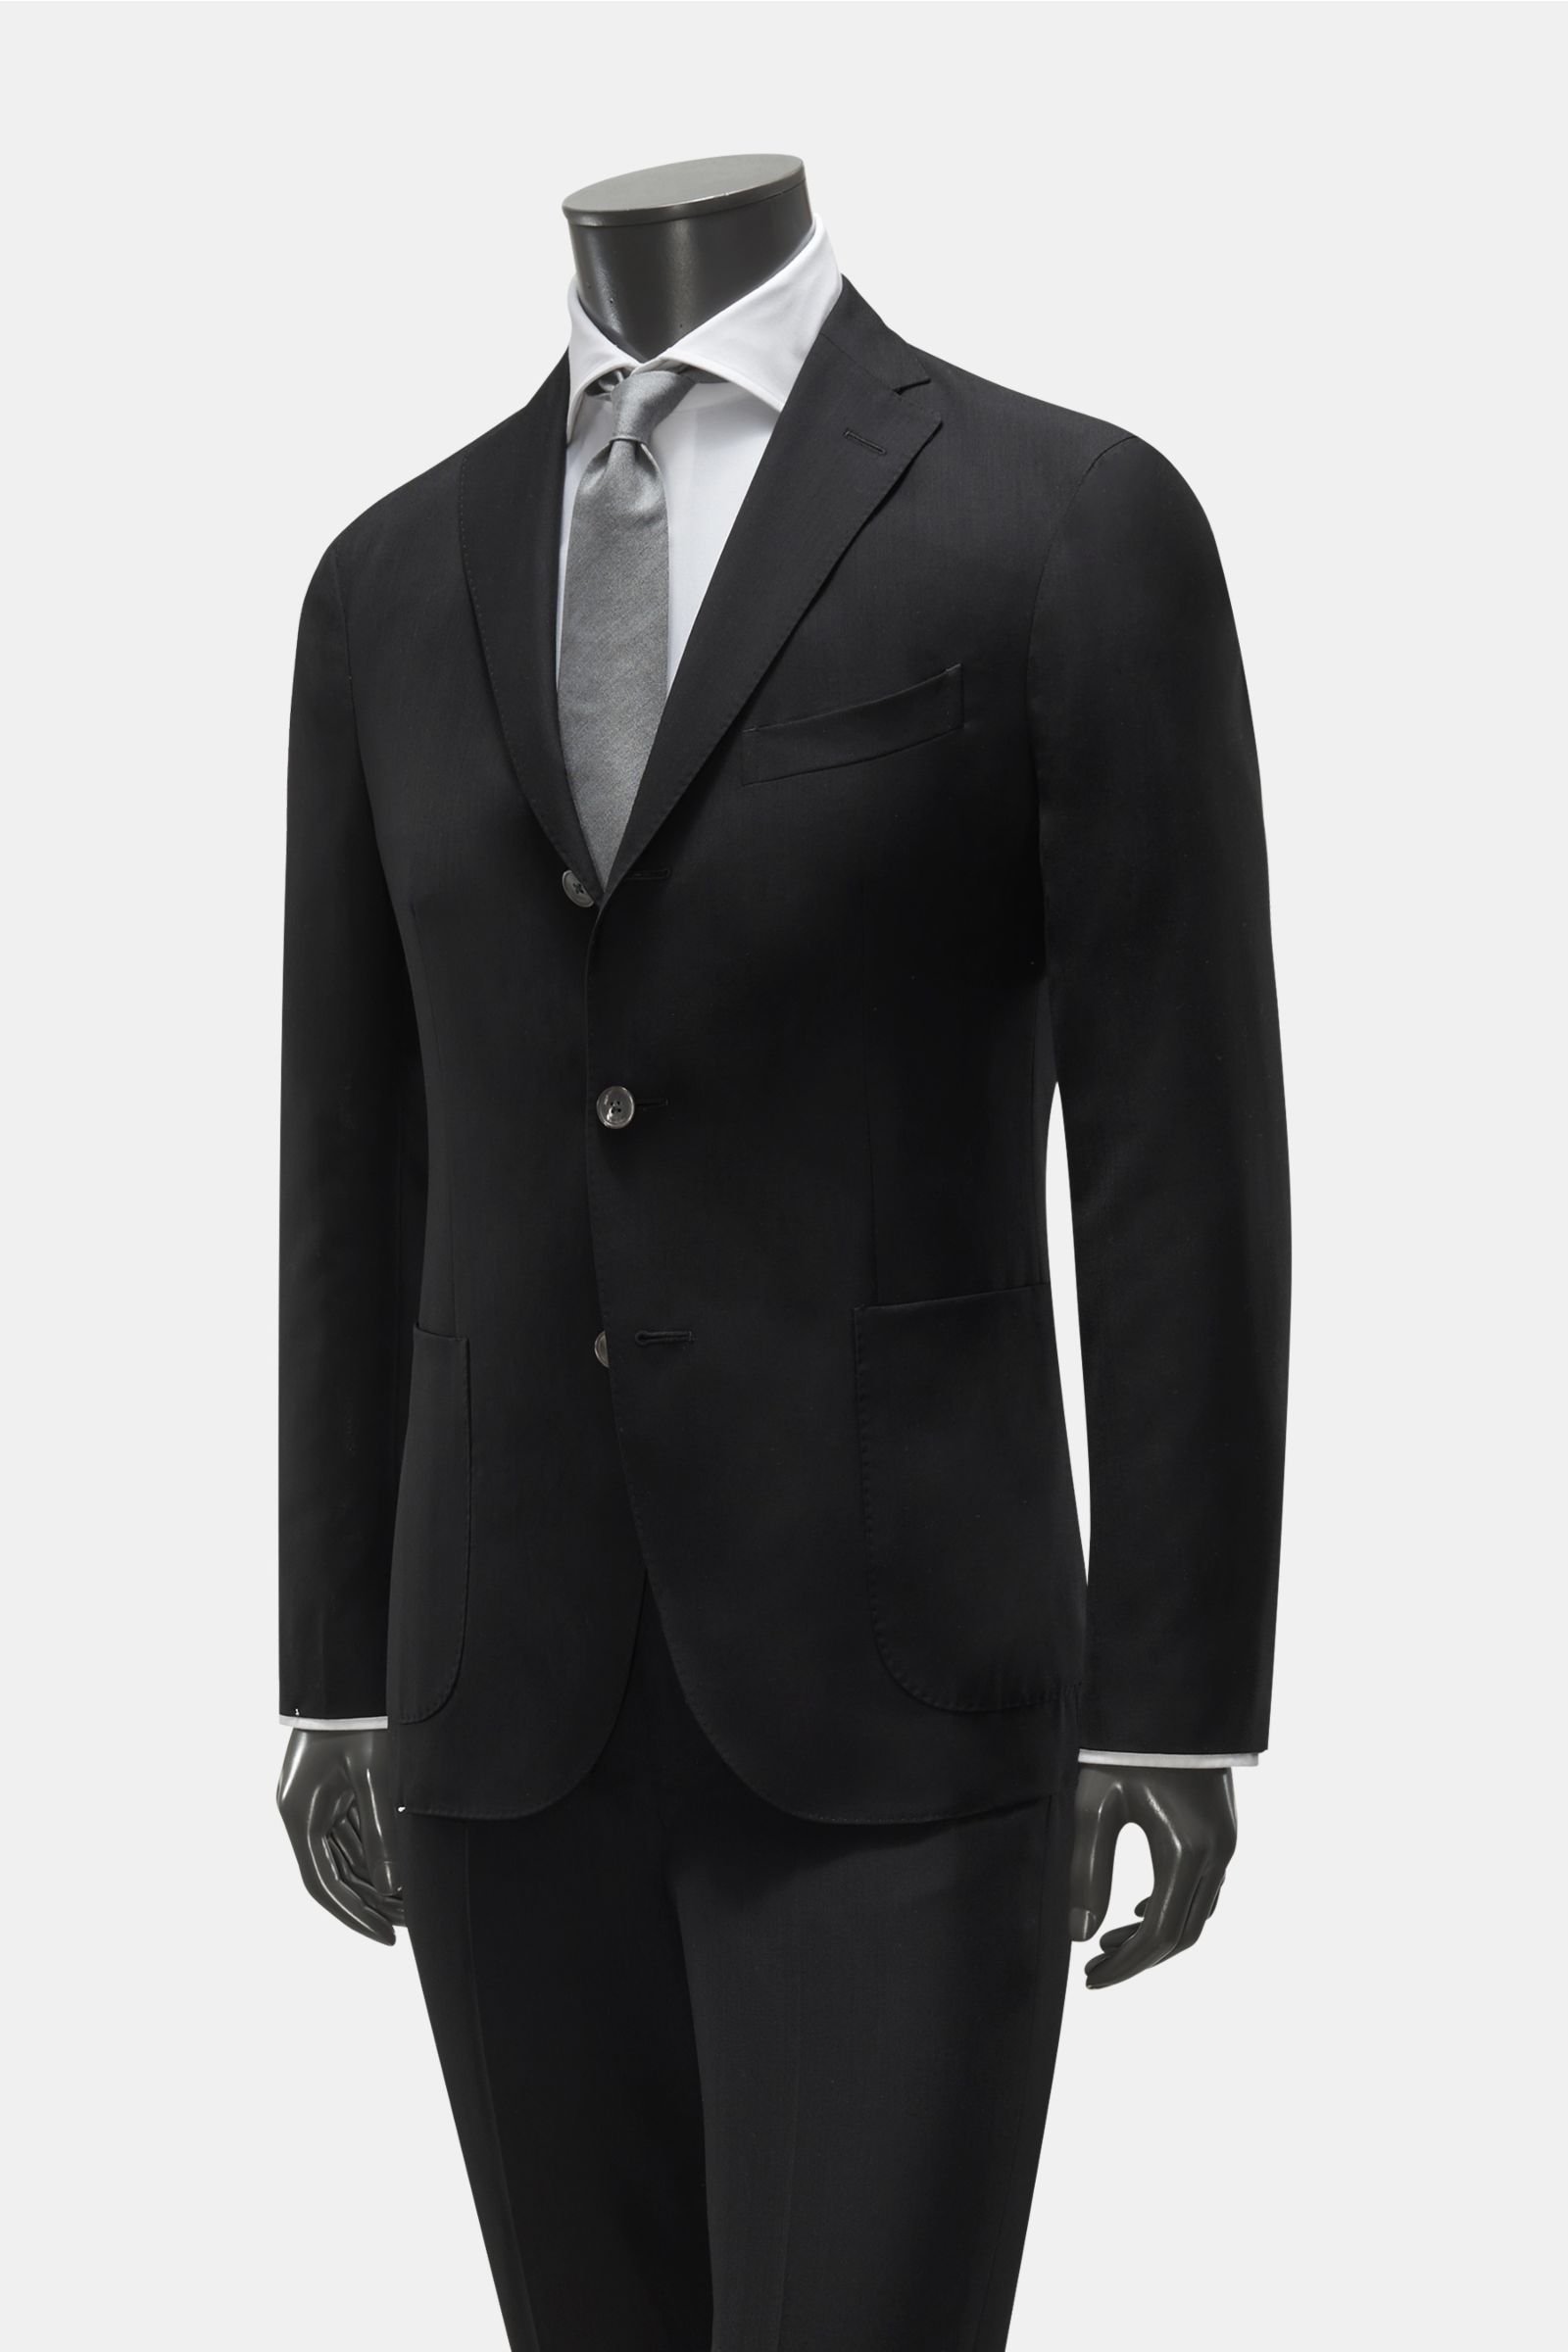 Suit black